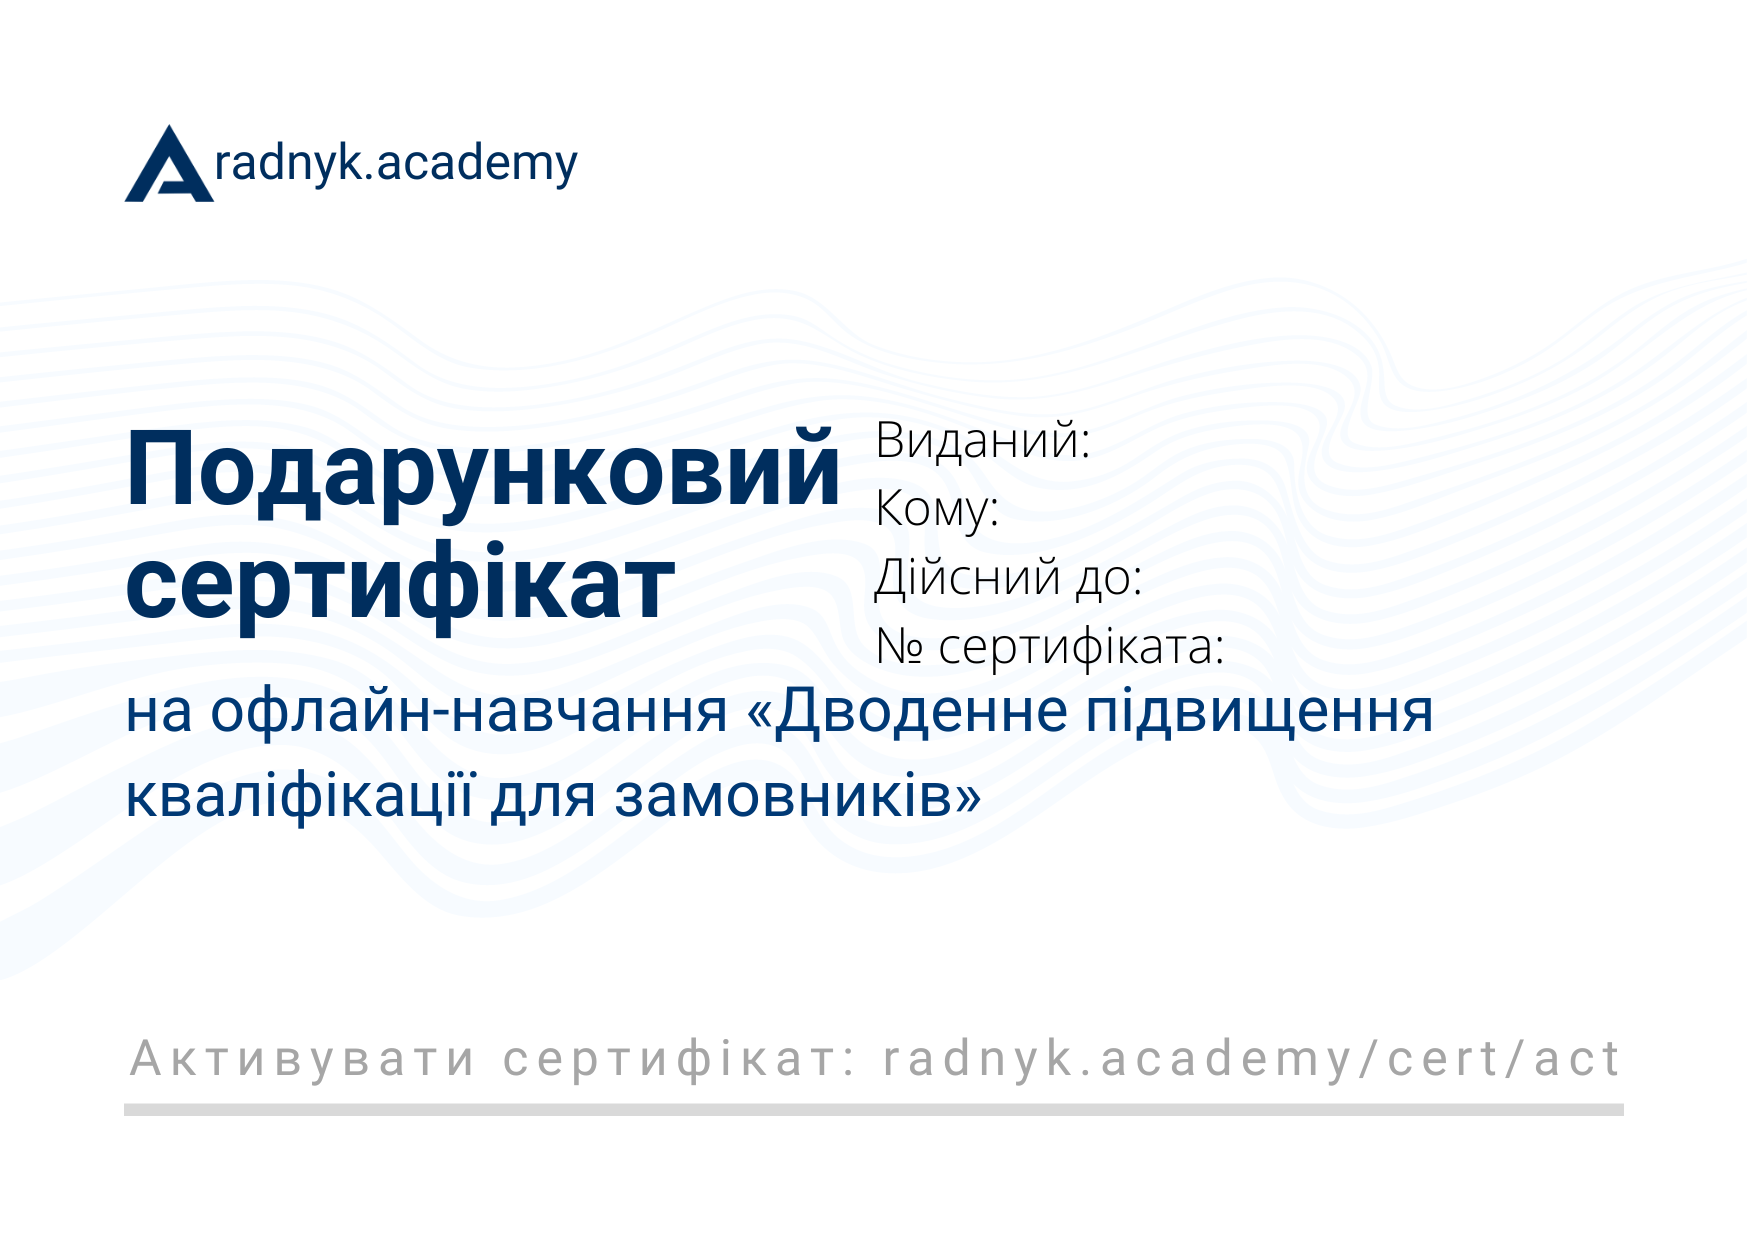 Подарунковий сертифікат на офлайн-навчання «Дводенне підвищення кваліфікації для замовників»